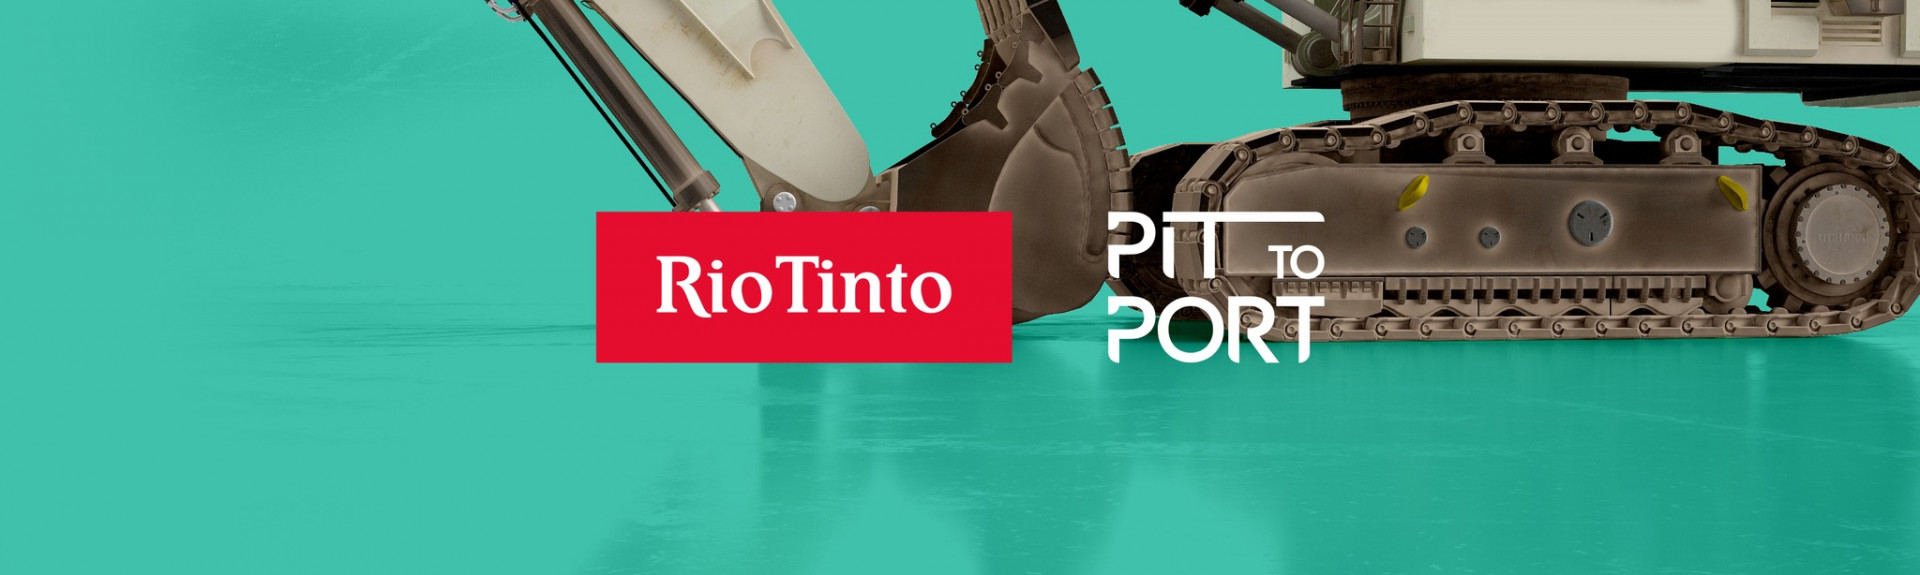 Rio Tinto Pit to Port